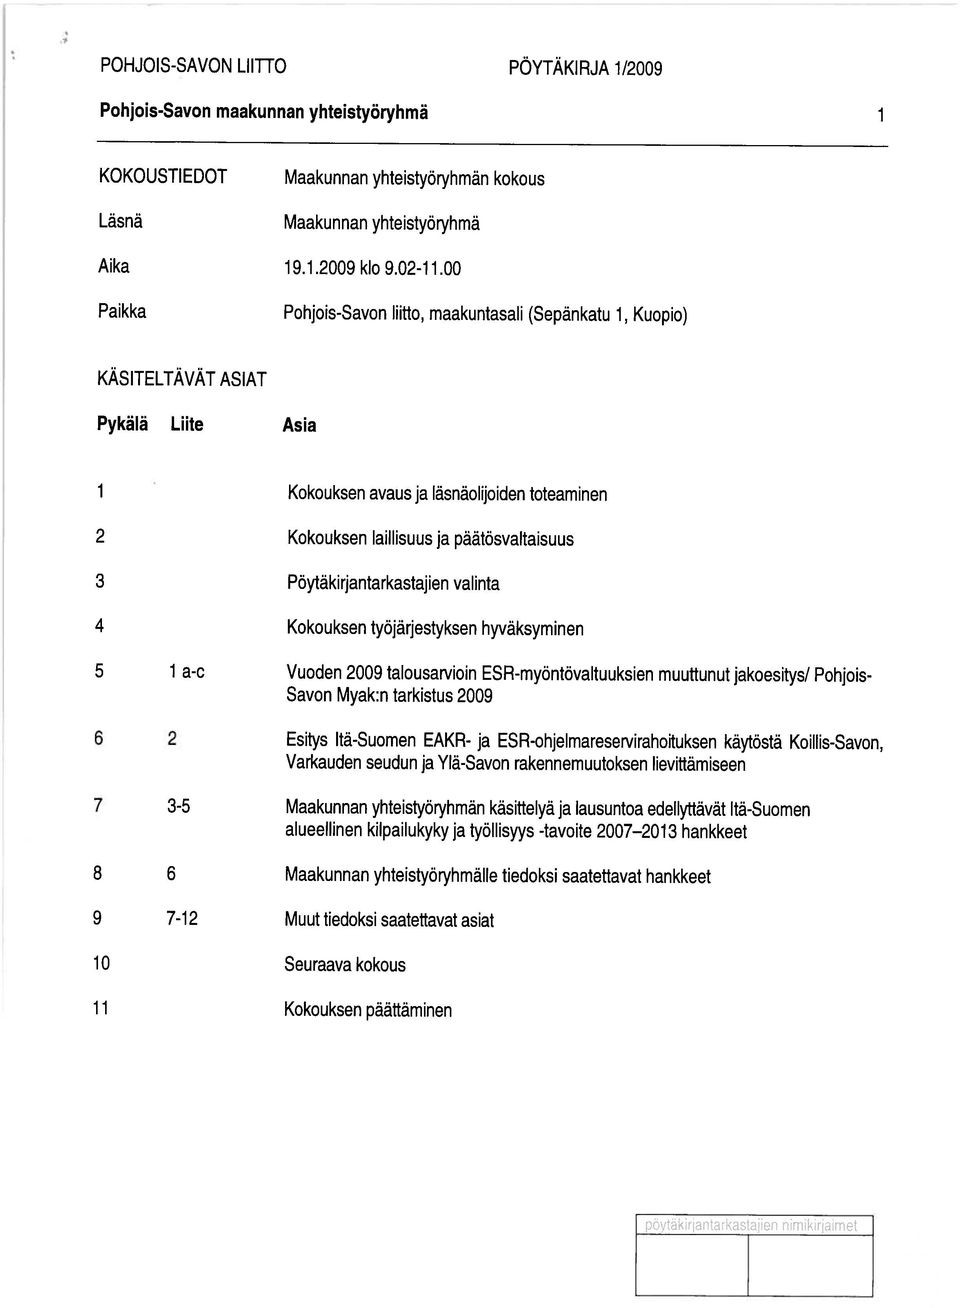 Pöytäkirjantarkastajien valinta 4 Kokouksen työjärjestyksen hyväksyminen 5 1 a-c Vuoden 2009 talousarvioin ESR-myäntövaltuuksien muuttunut jakoesitys/ Pohjois- Savon Myak:n tarkistus 2009 Esitys